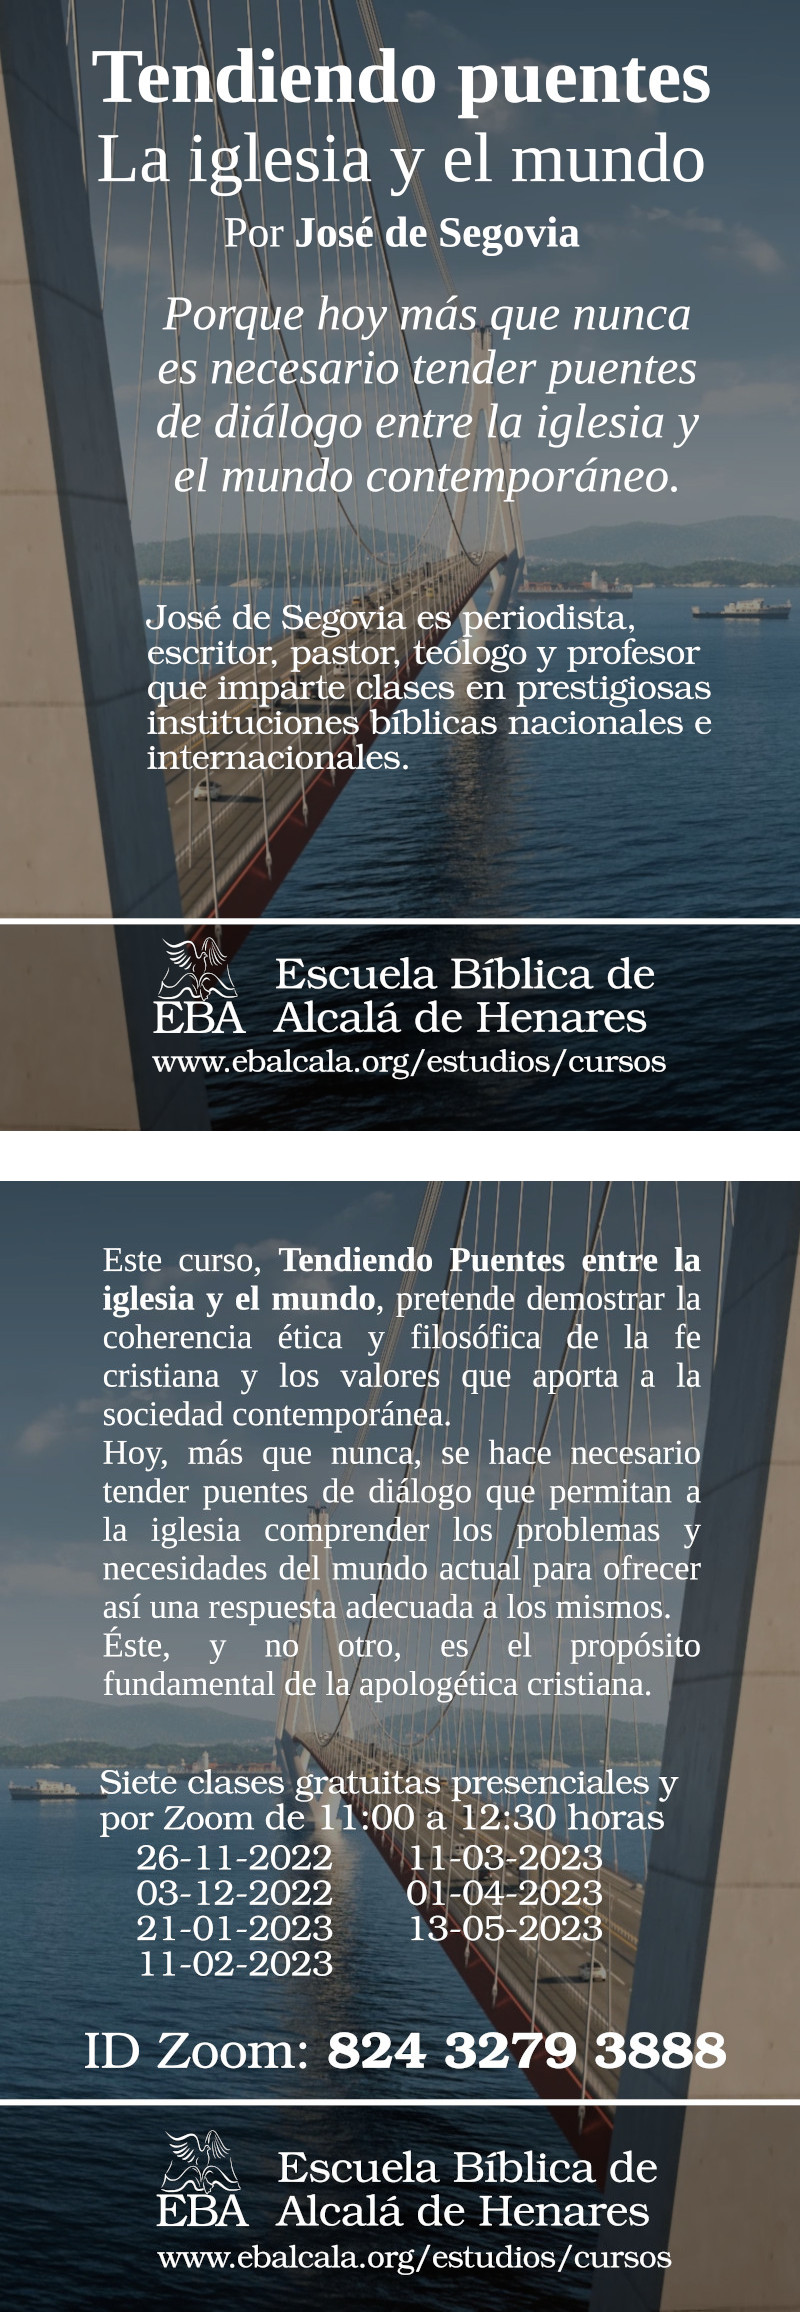 IECC: Iglesia Evangélica Compromiso con Cristo. (@IECCalcala) / Twitter